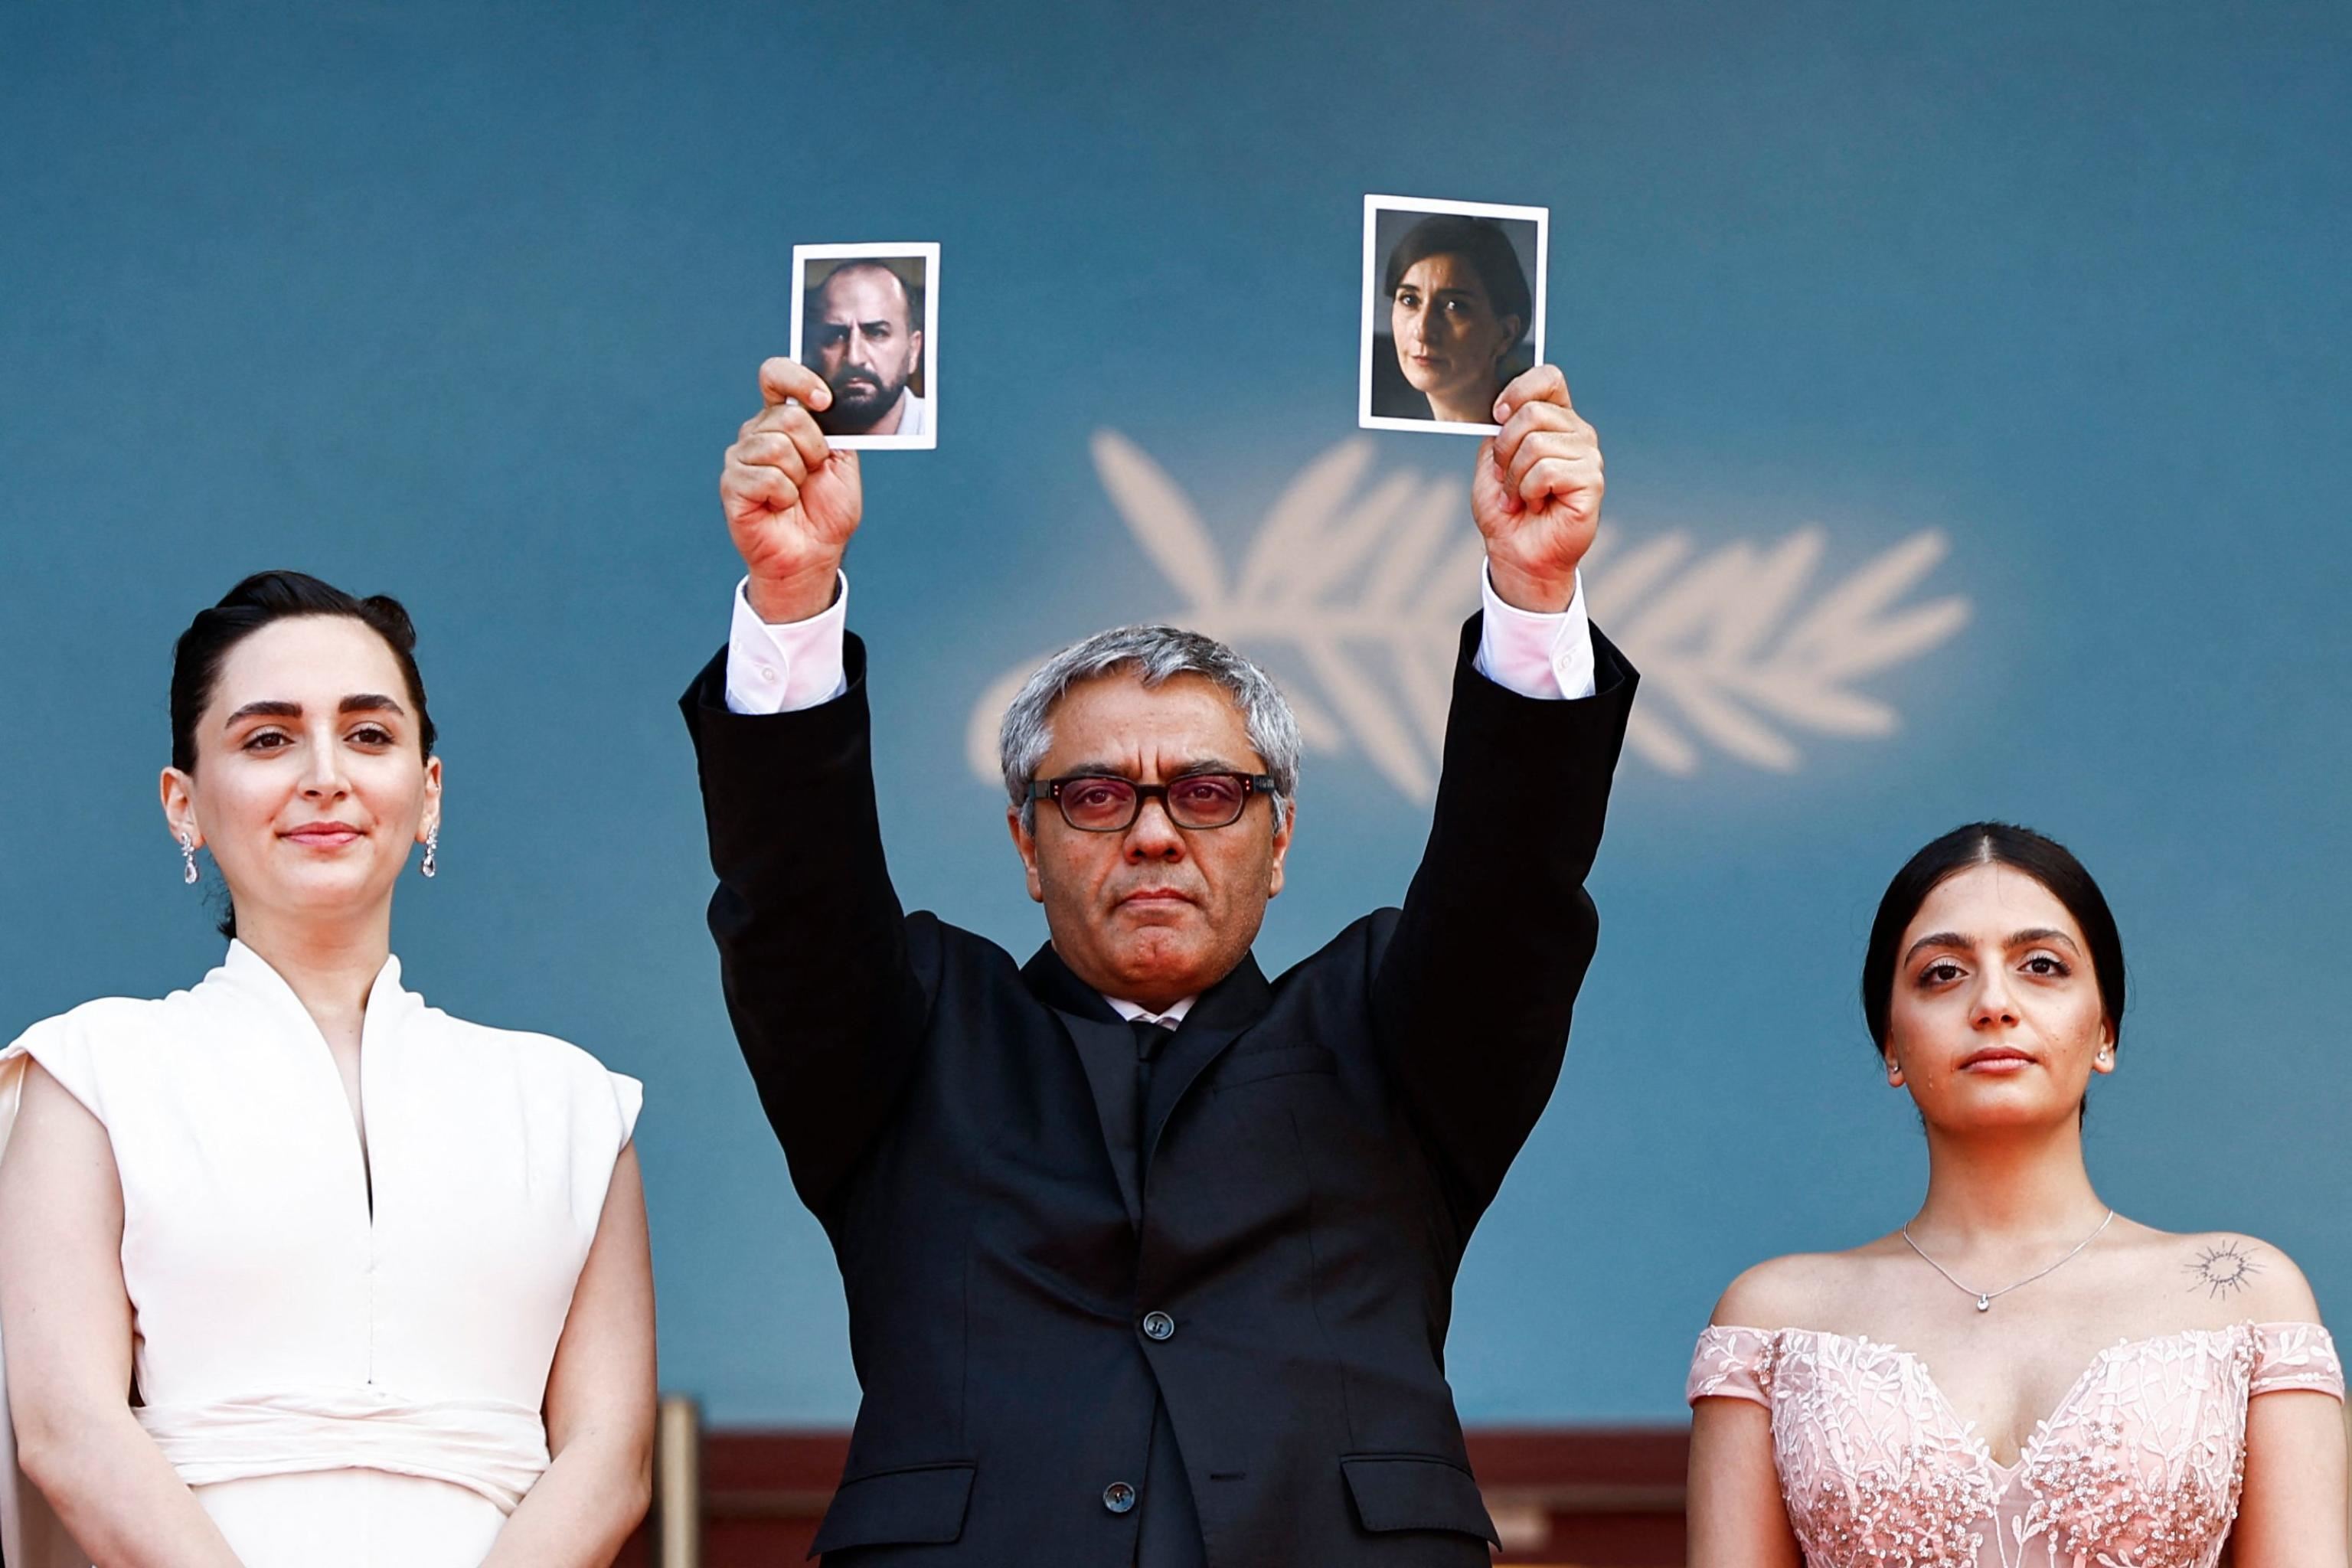 Il regista iraniano Mohammad Rasoulof con le foto degli attori Missagh Zareh e Soheila Golestani, che non possono lasciare il Paese